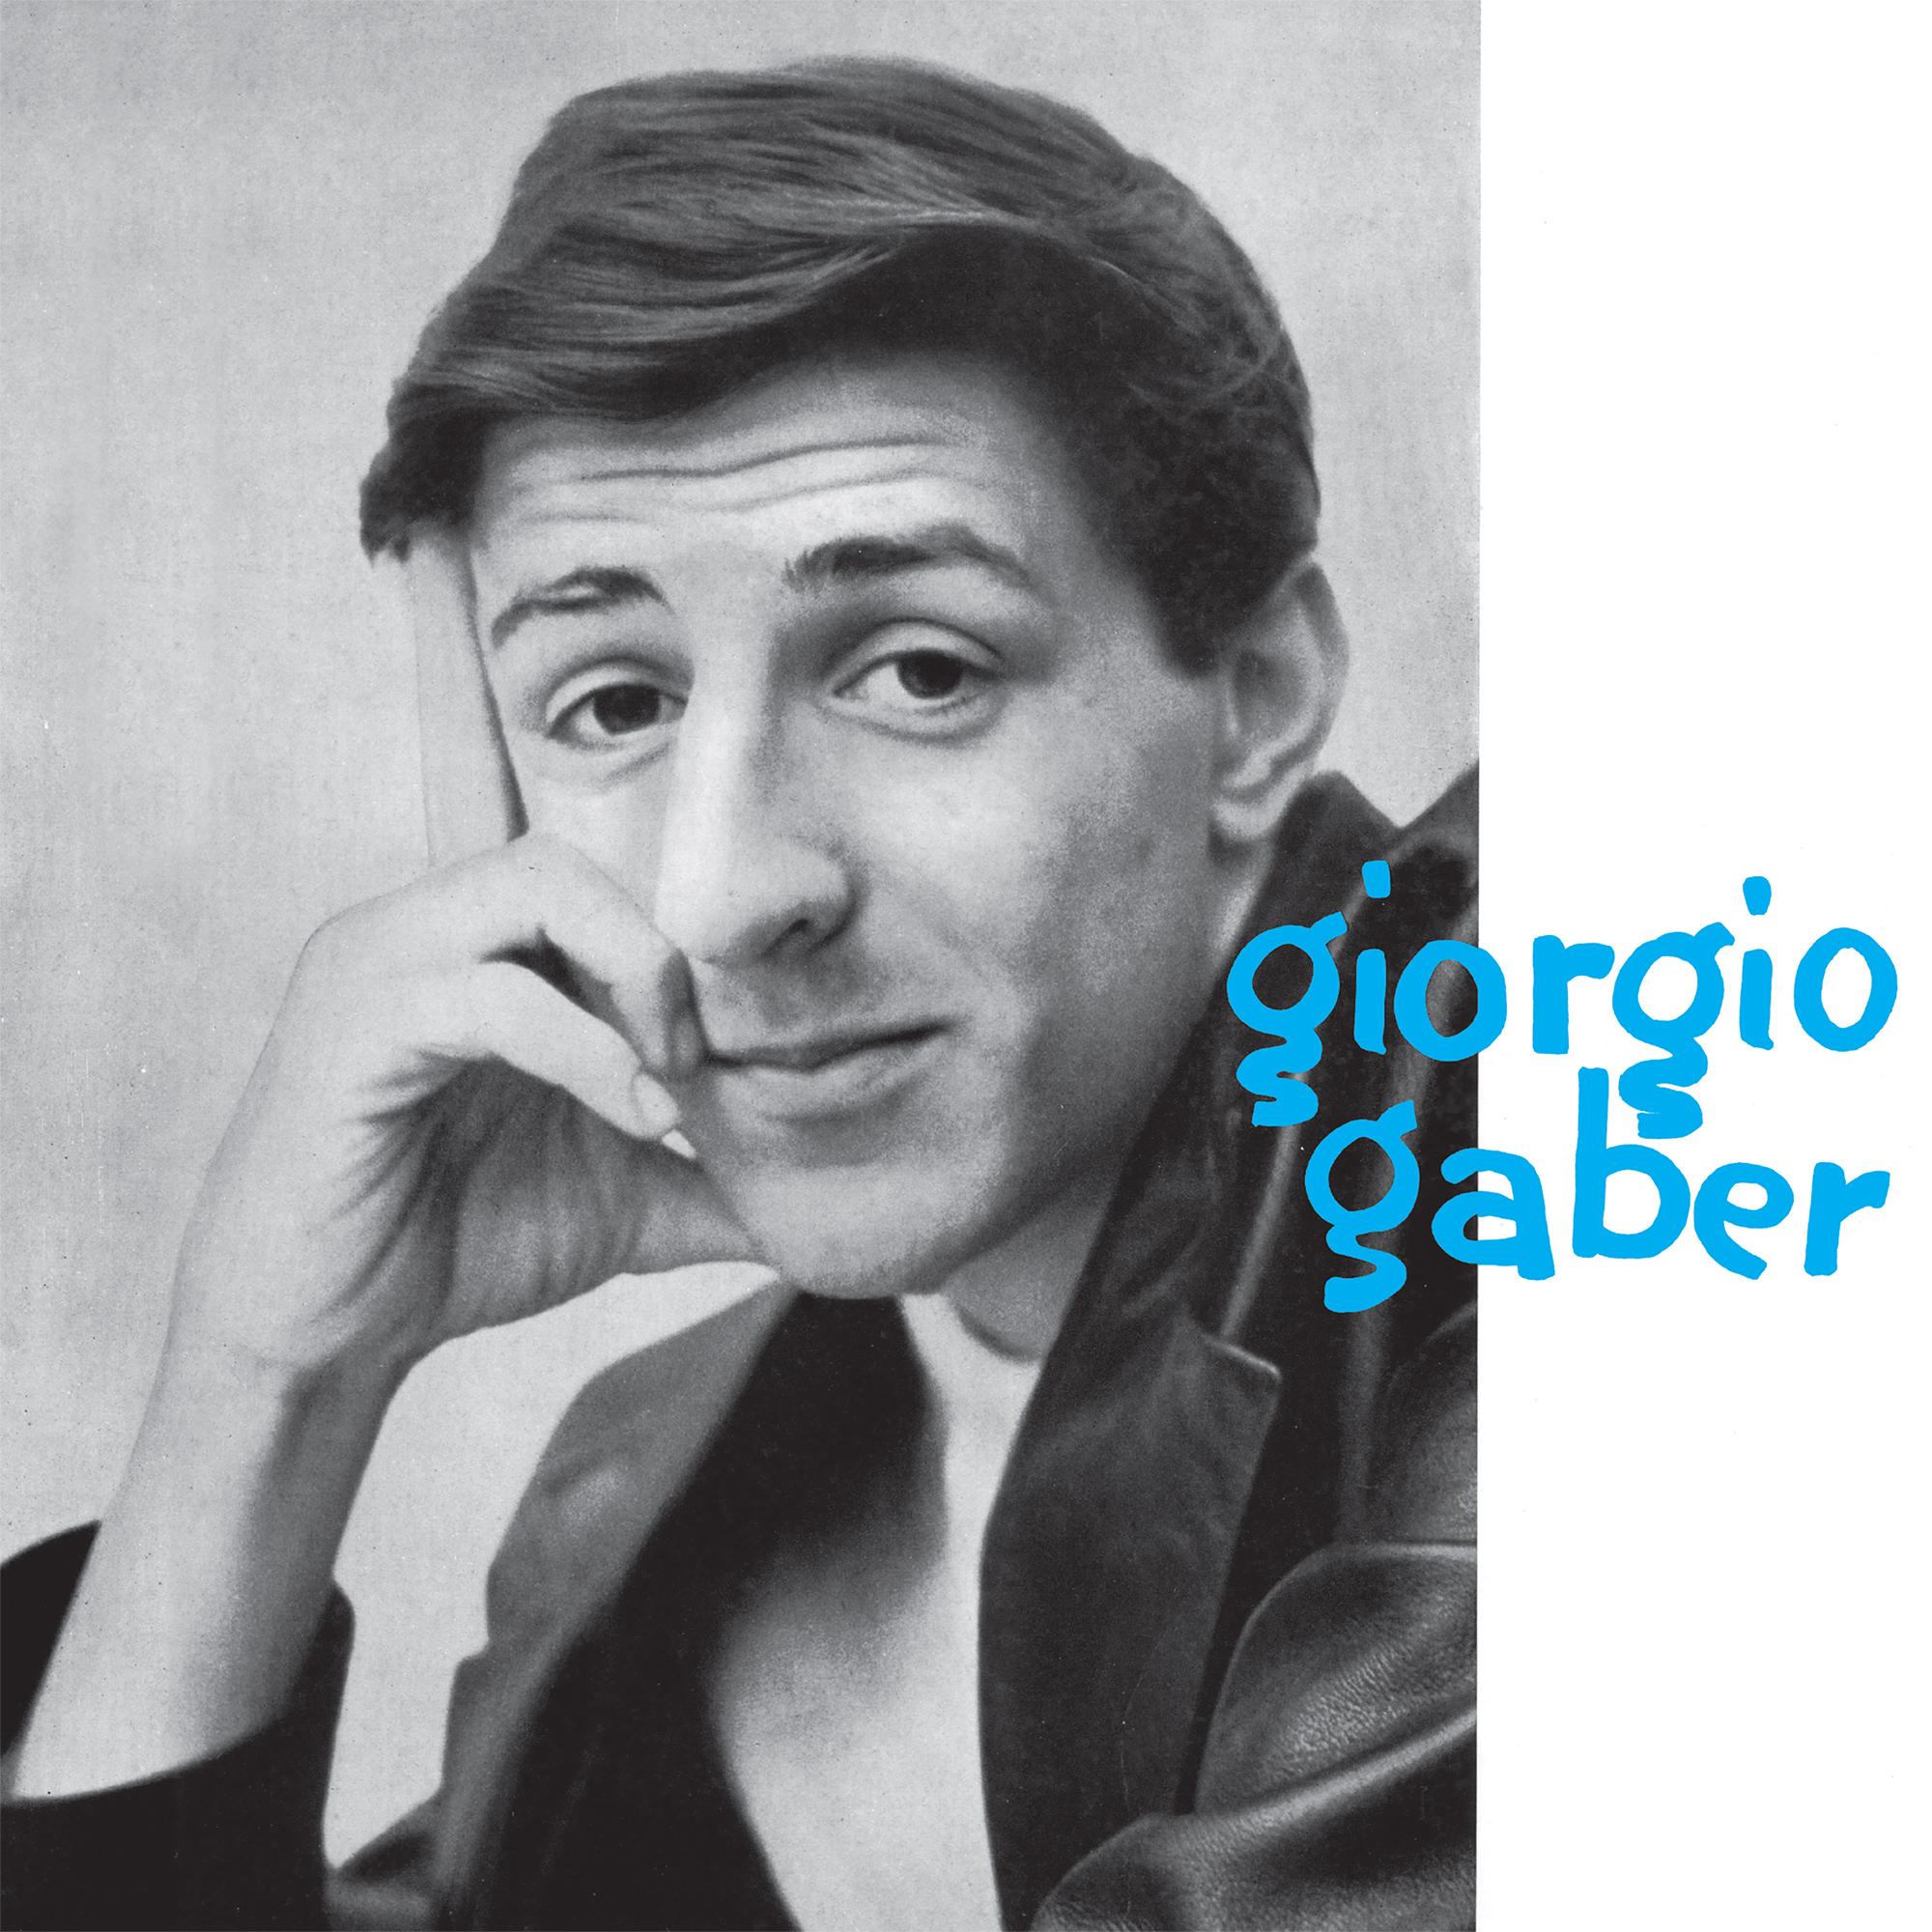 Gaber Giorgio - Giorgio Gaber Lp 180 Gr. - Foto 1 di 1